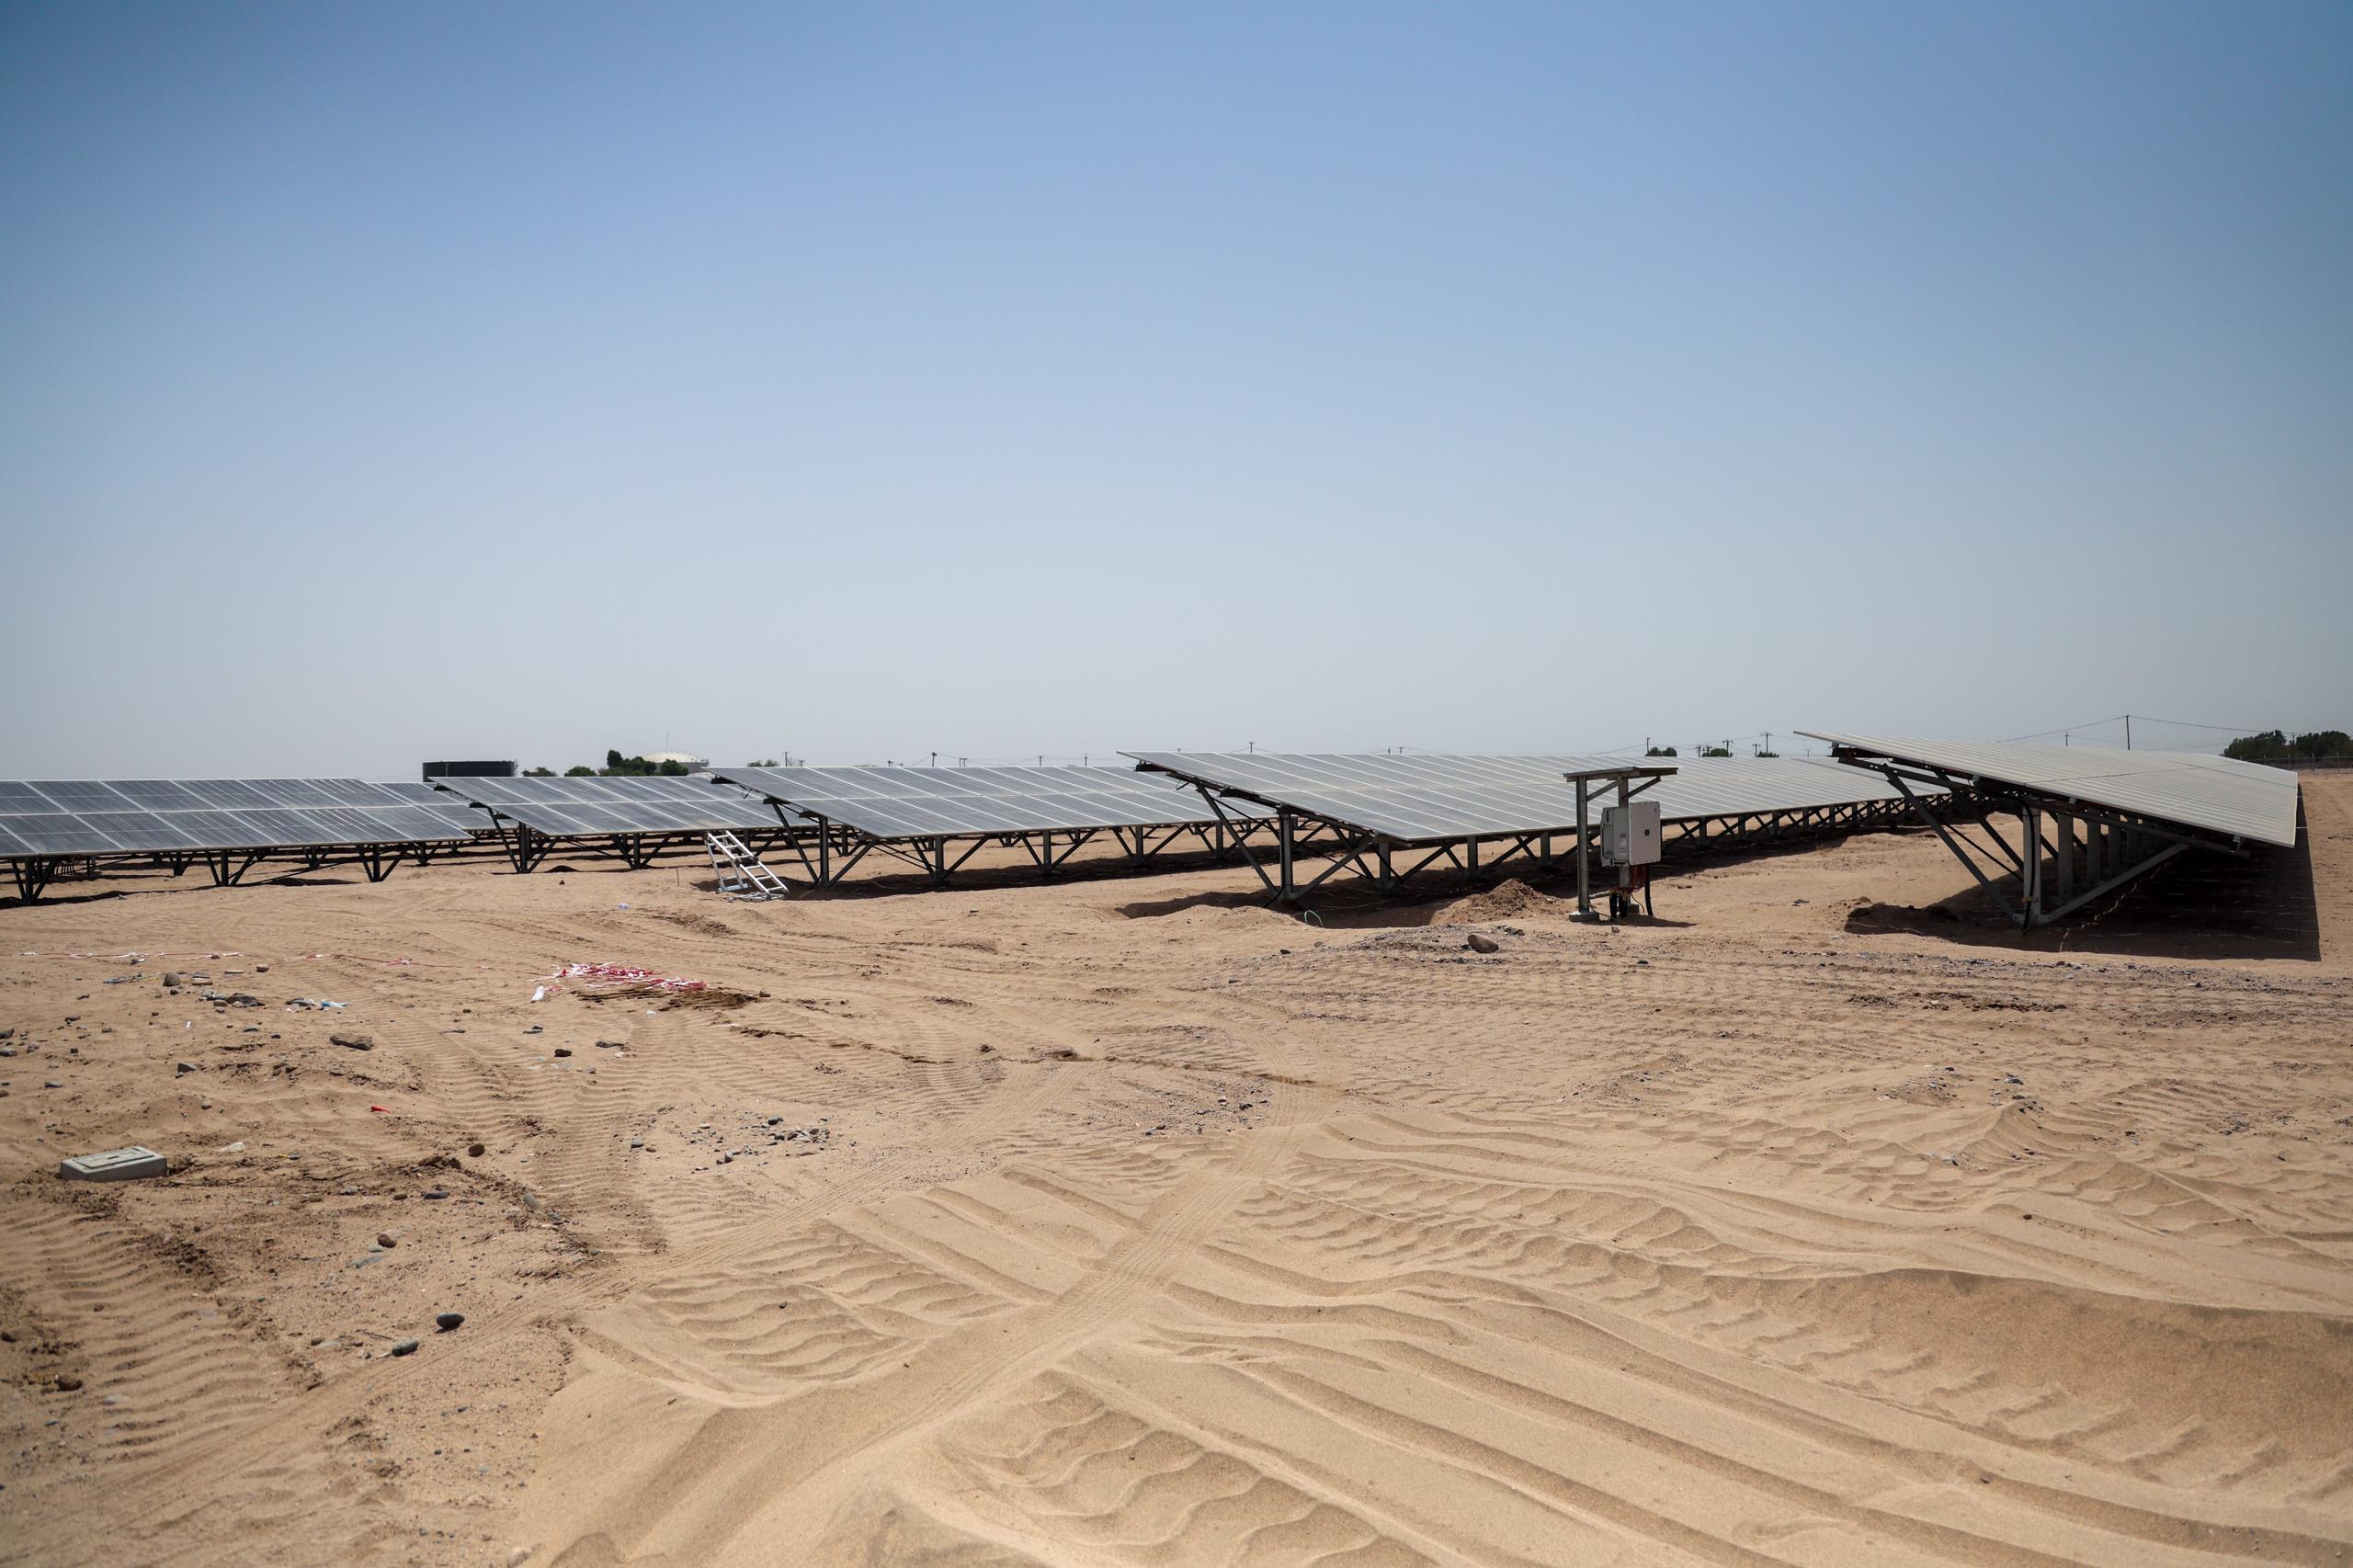 Aden Solar Power Plant Begins Operations